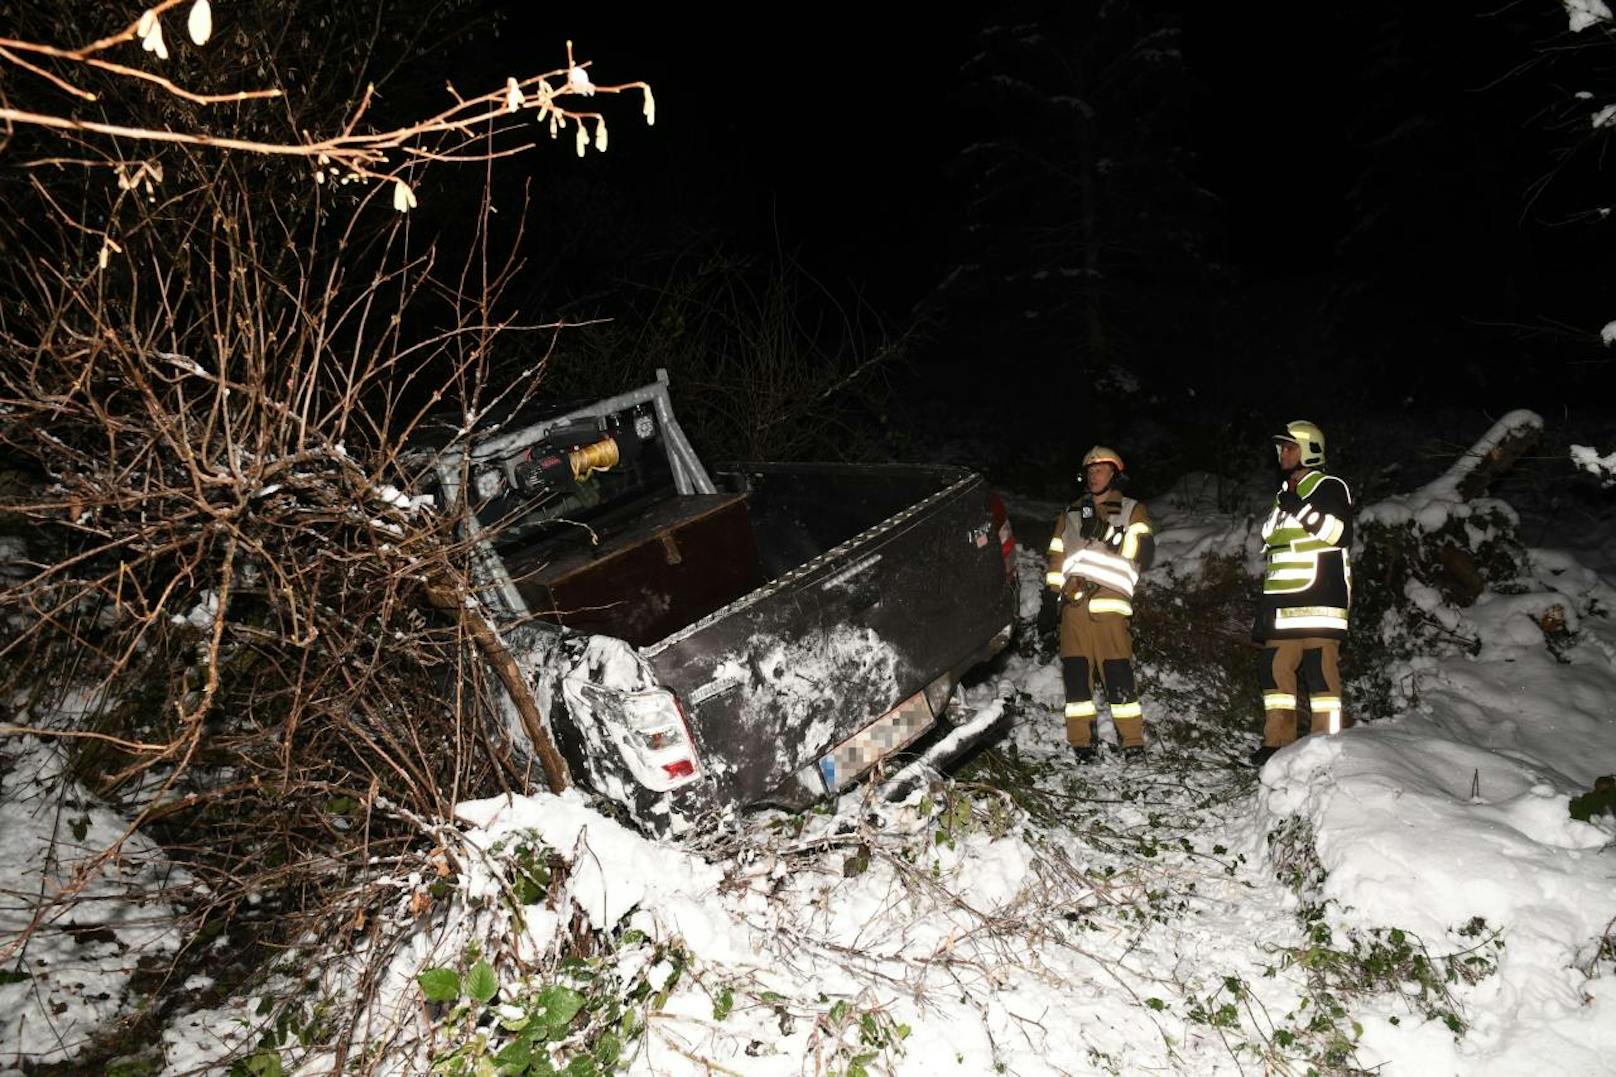 Schwerer Verkehrsunfall in Hopfgarten: Der Geländewagen überschlug sich mehrmals, der Lenker wurde schwer verletzt.